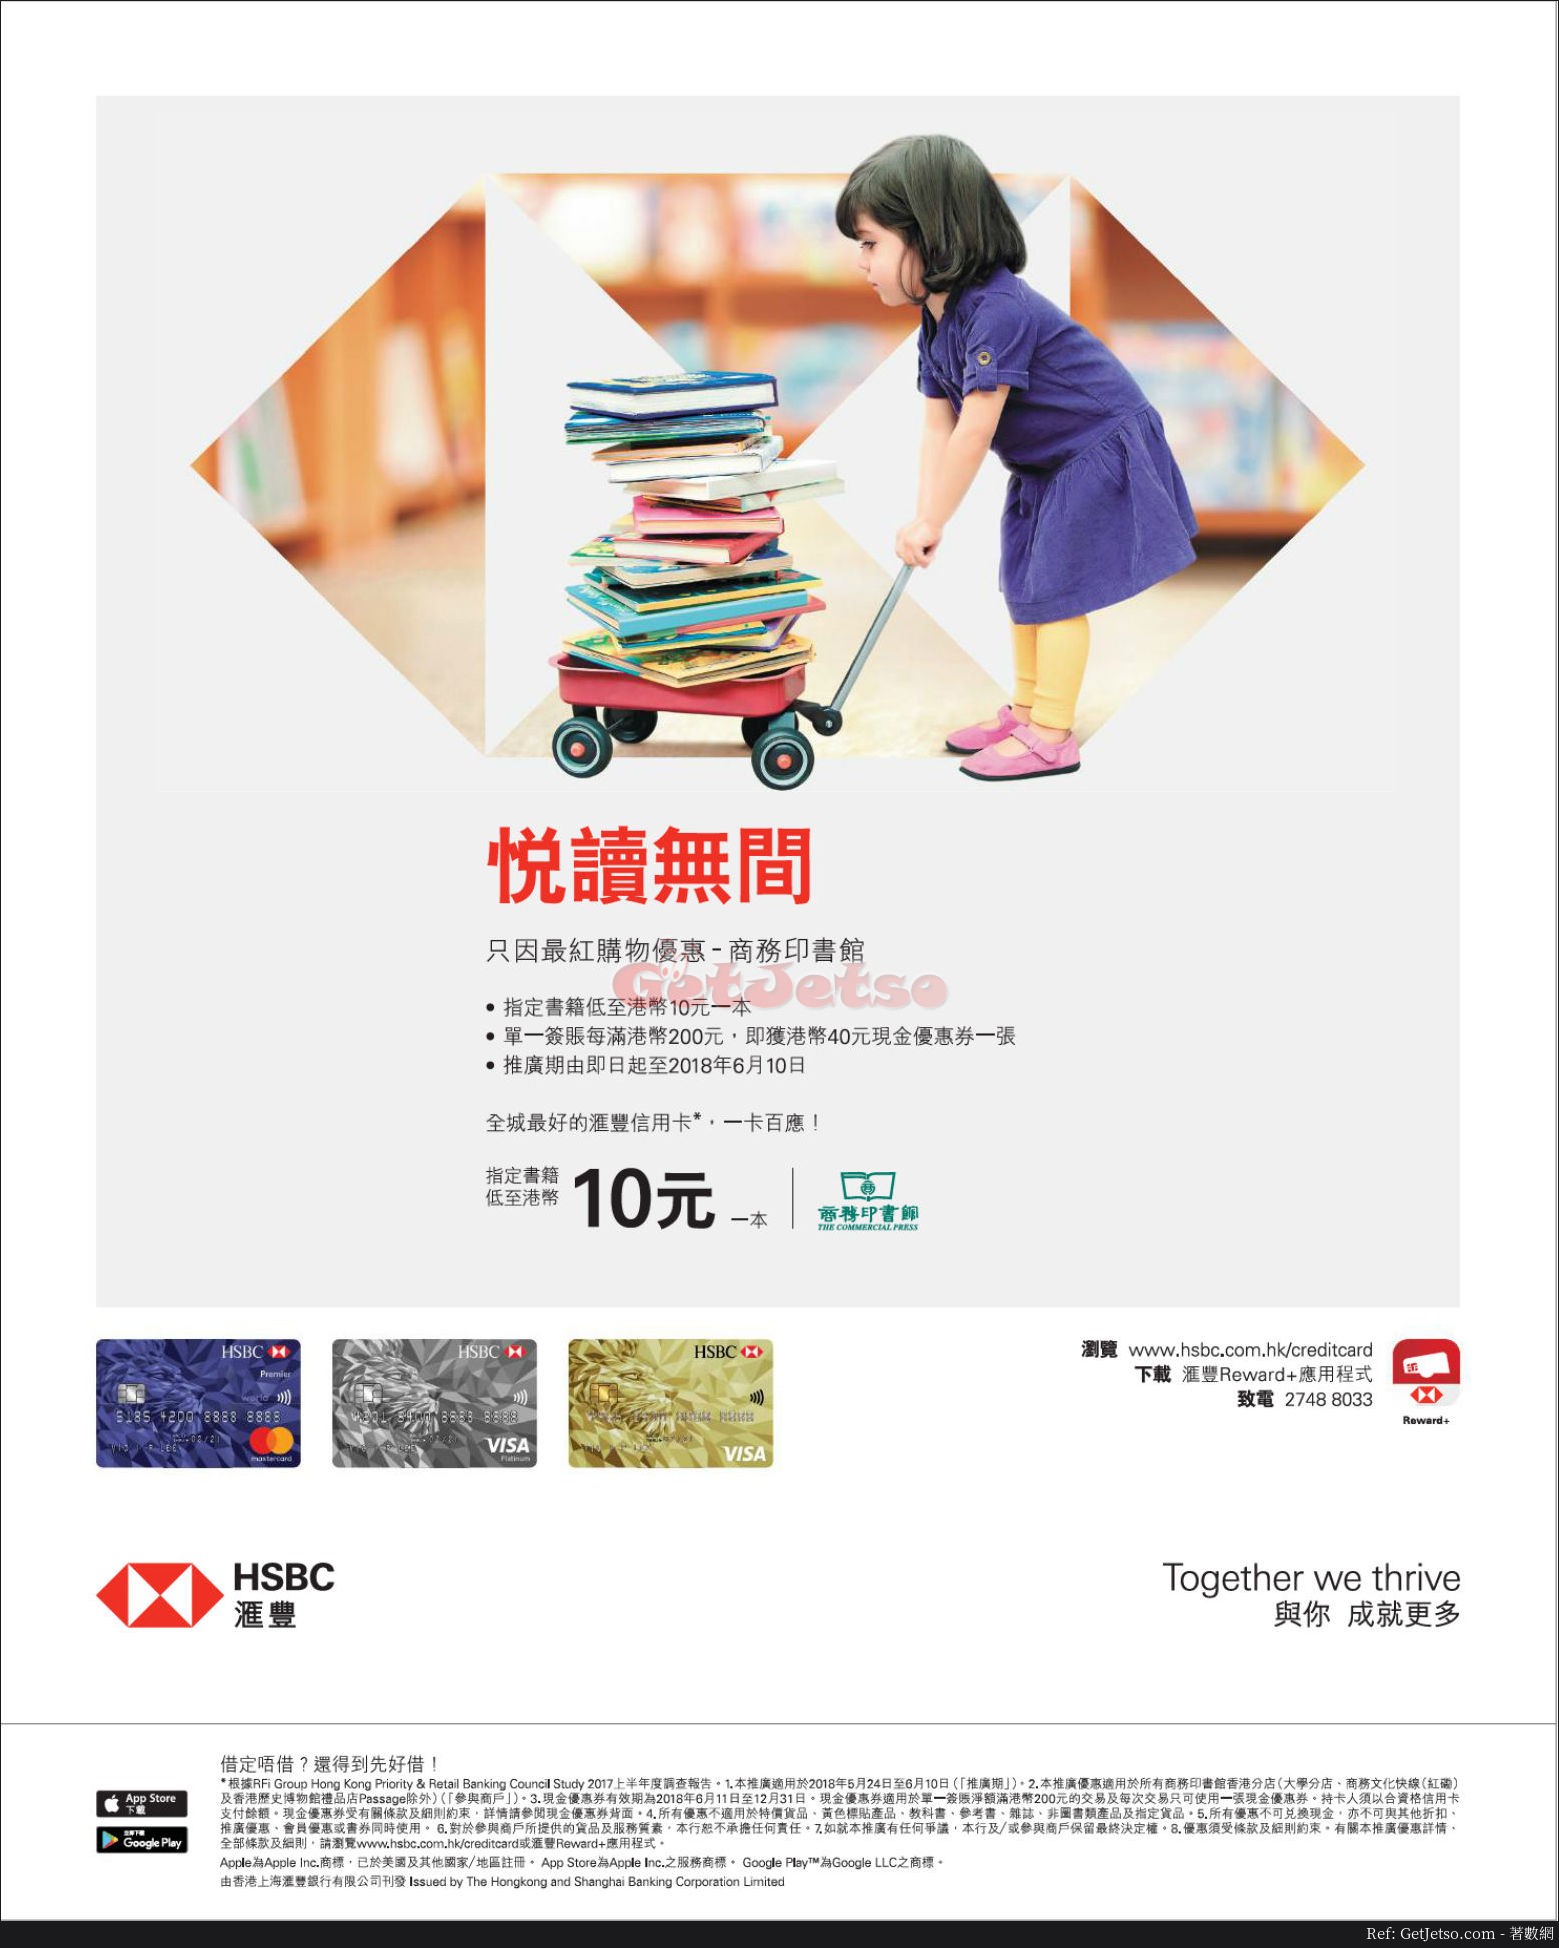 商務印書館低至10元優惠@滙豐信用卡(至18年6月10日)圖片1